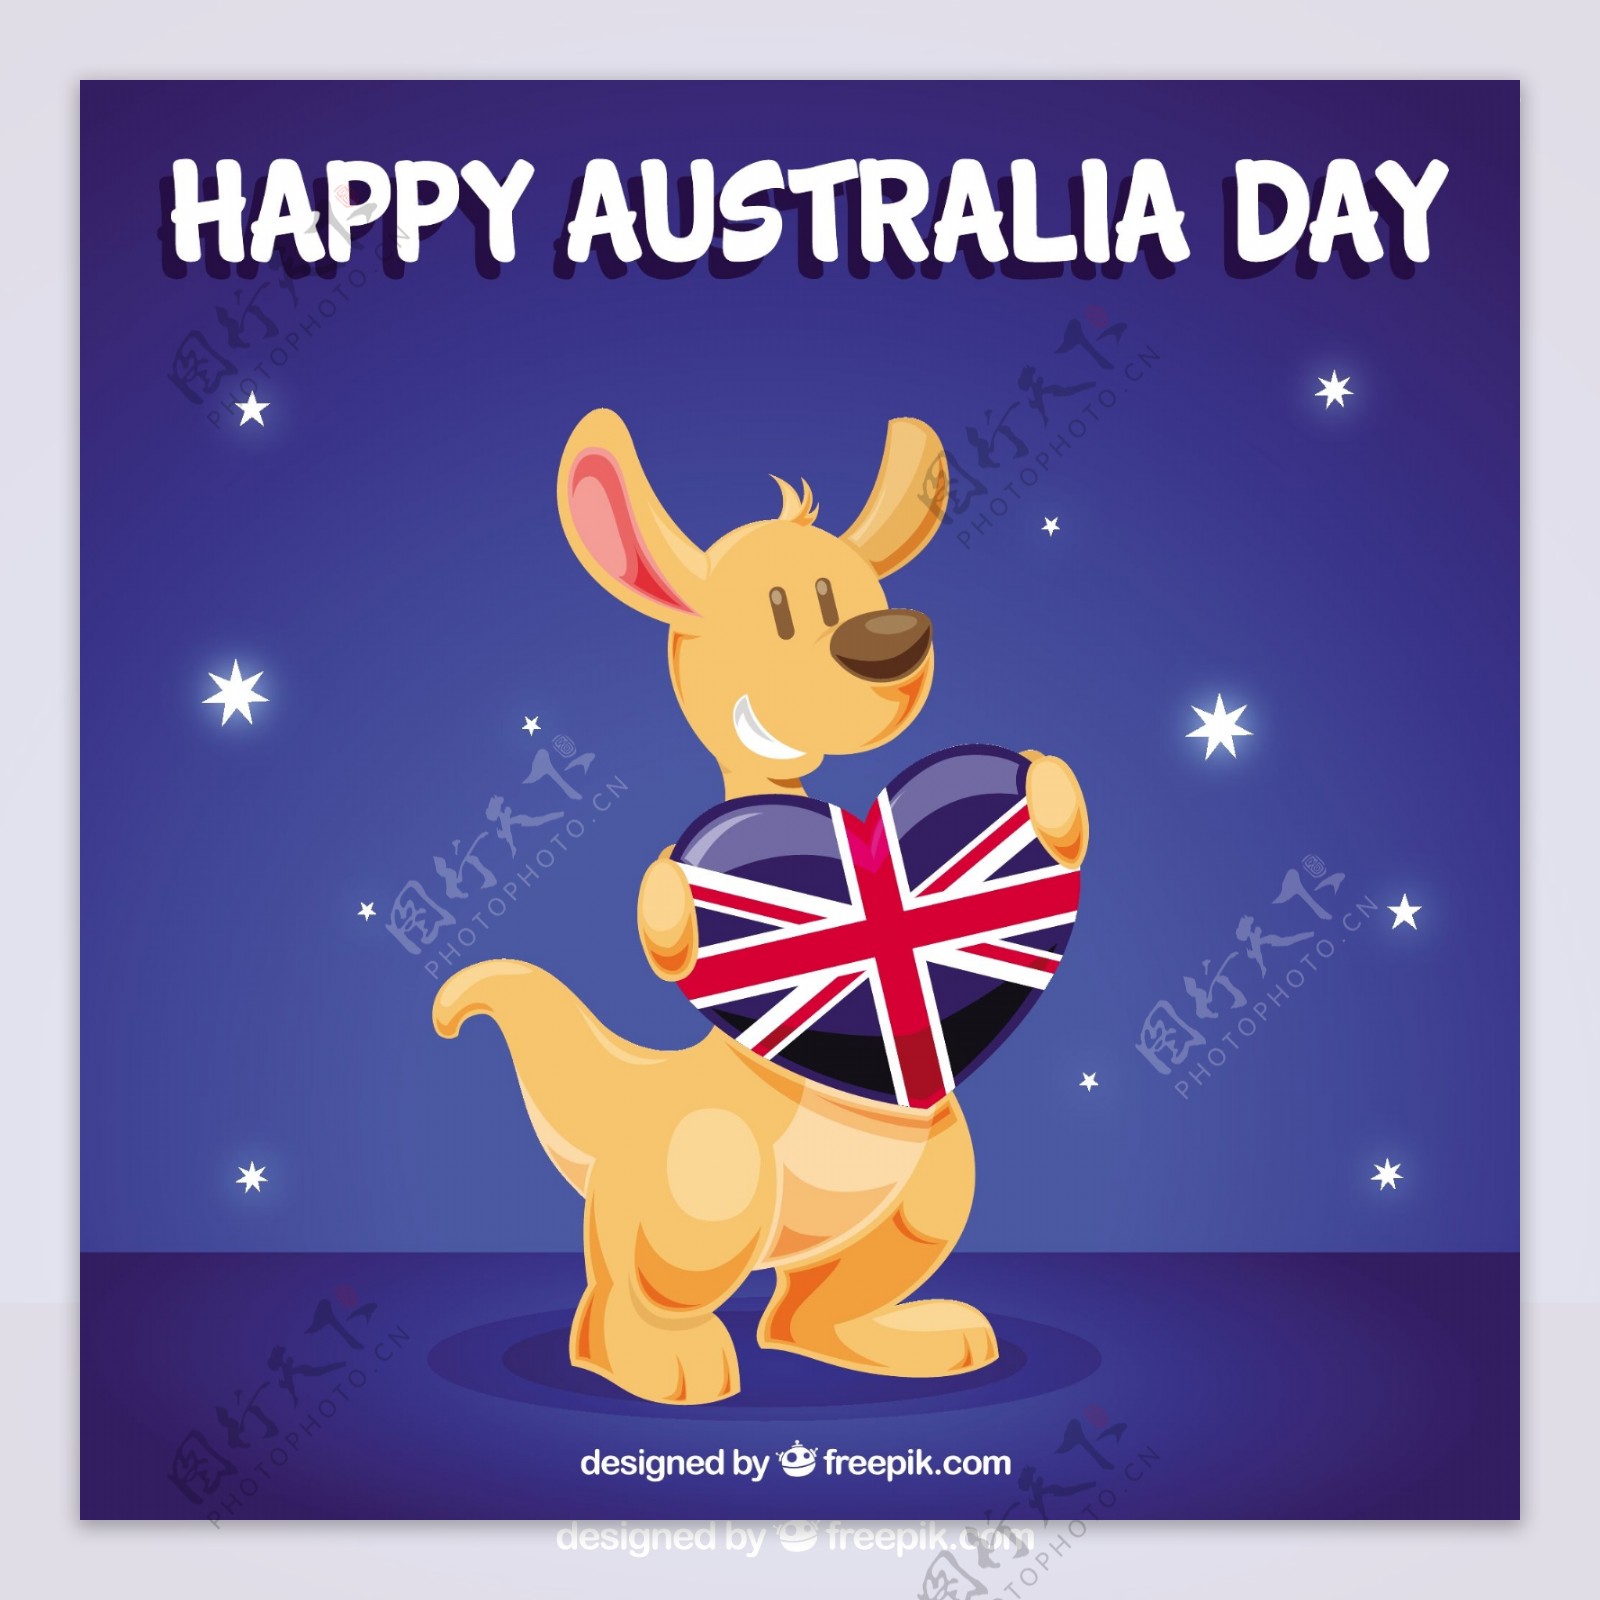 袋鼠庆祝澳大利亚日的背景